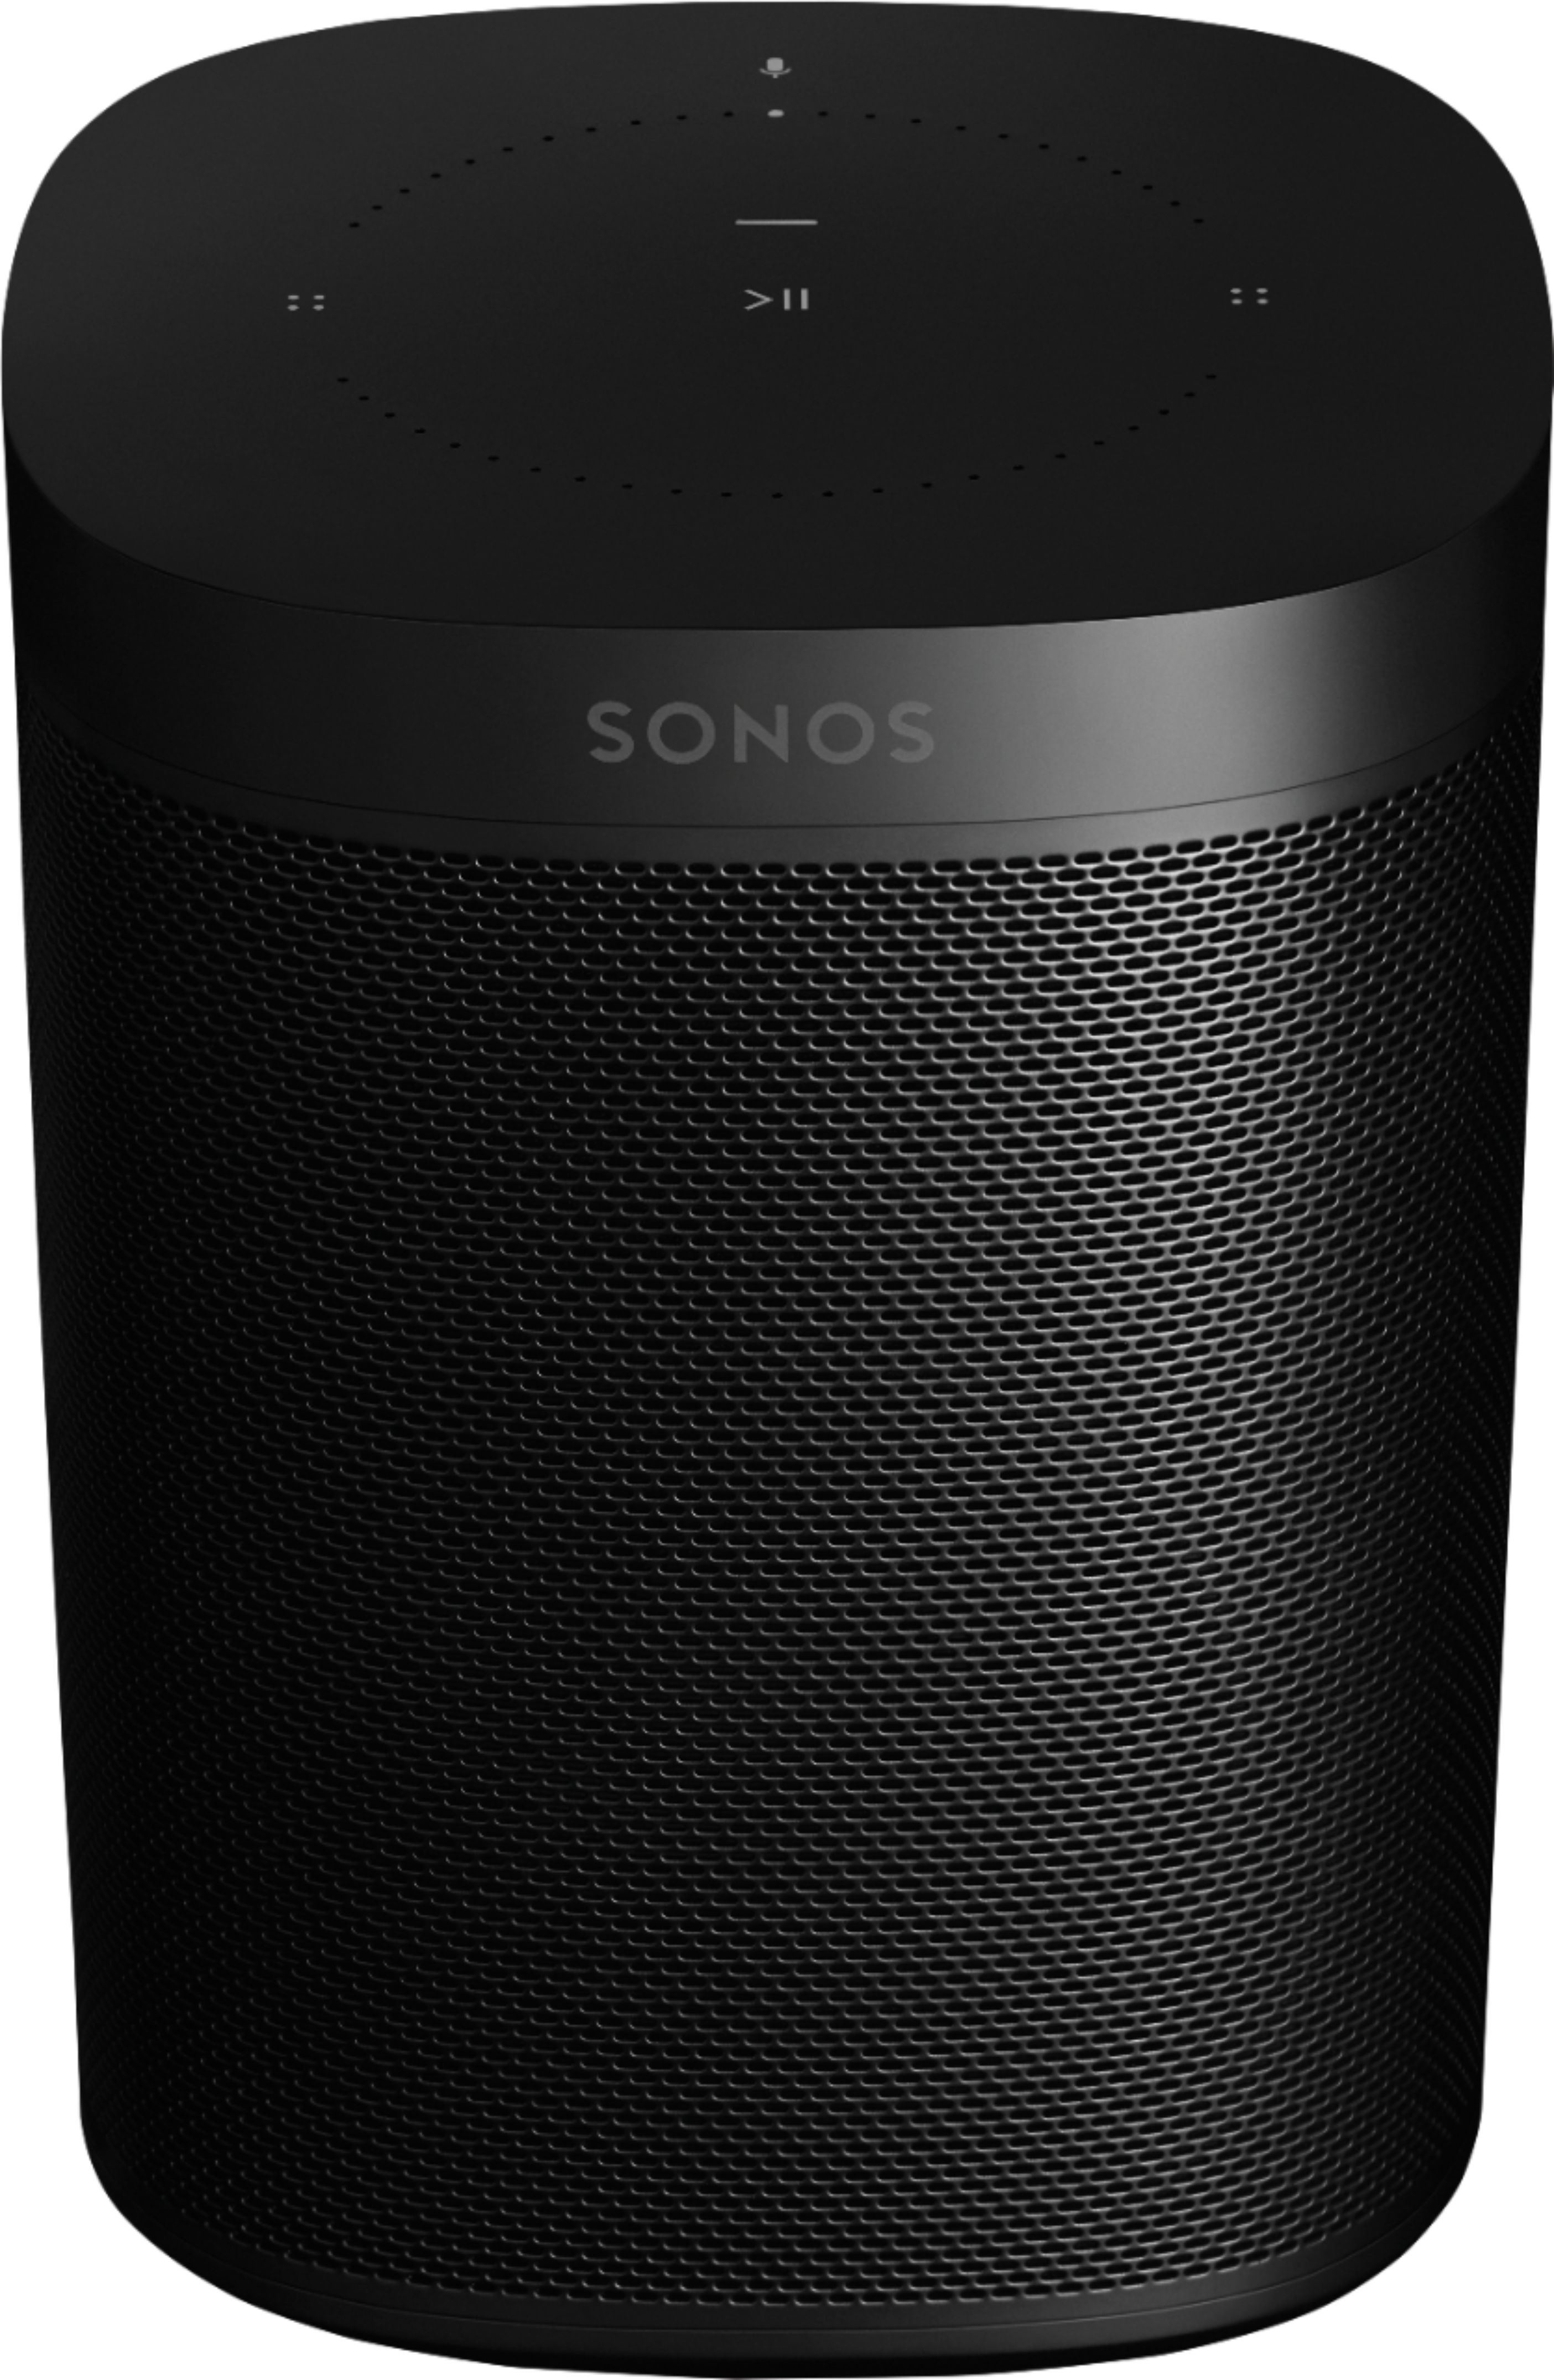 Sonos One Gen 2 Smart Speaker With Alexa Built-in Sonos One 2nd Generation Black 